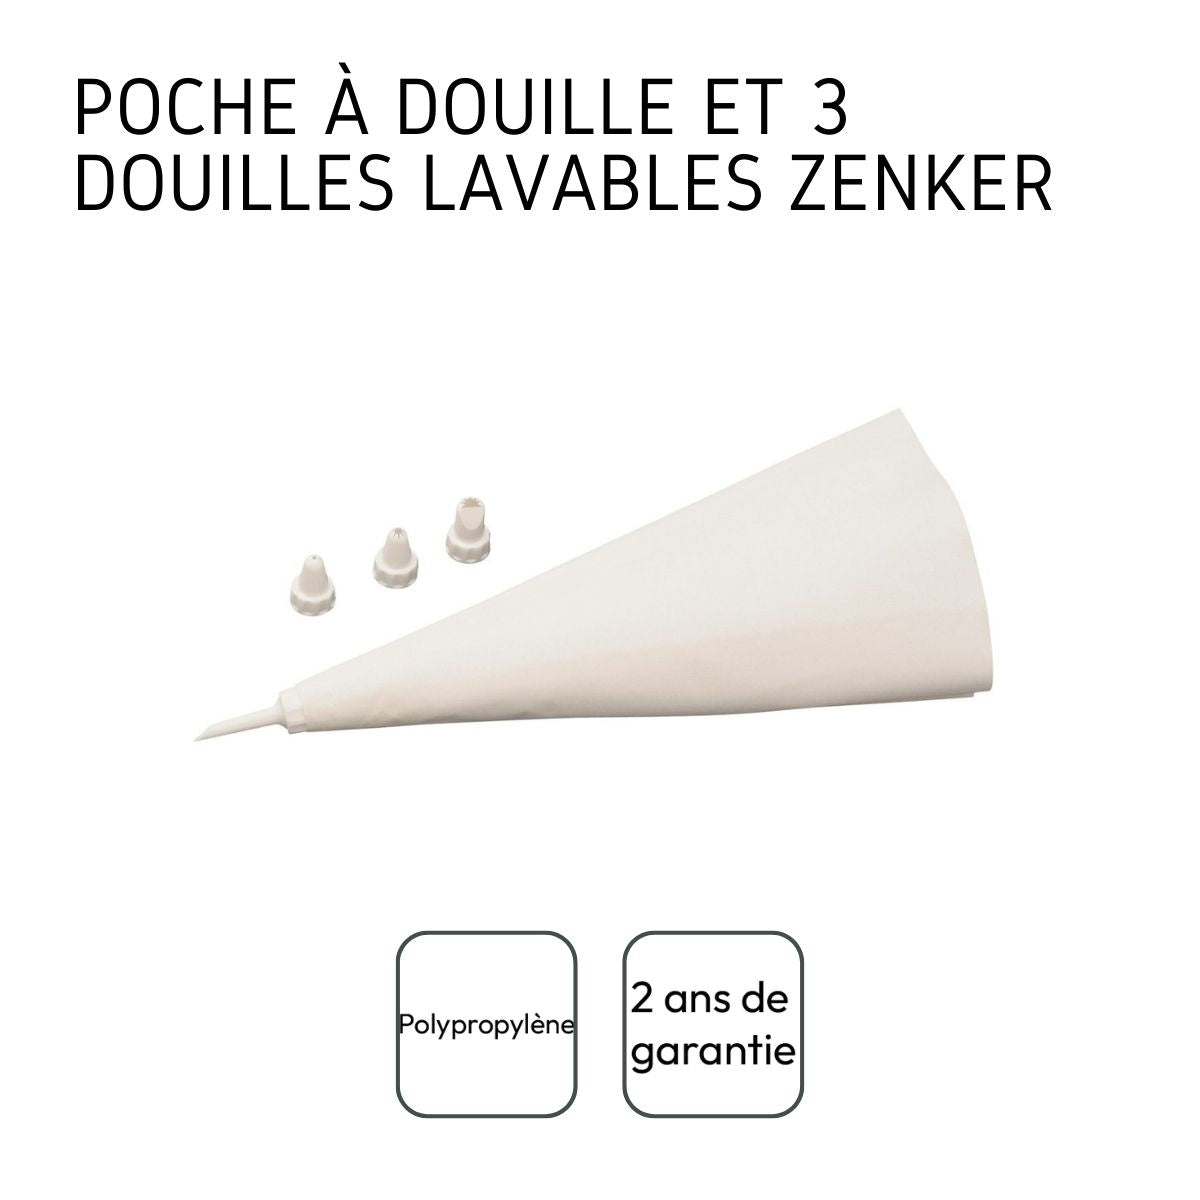 Poche à douille réutilisable et 4 embouts plastique Smart Pastry Zenke 